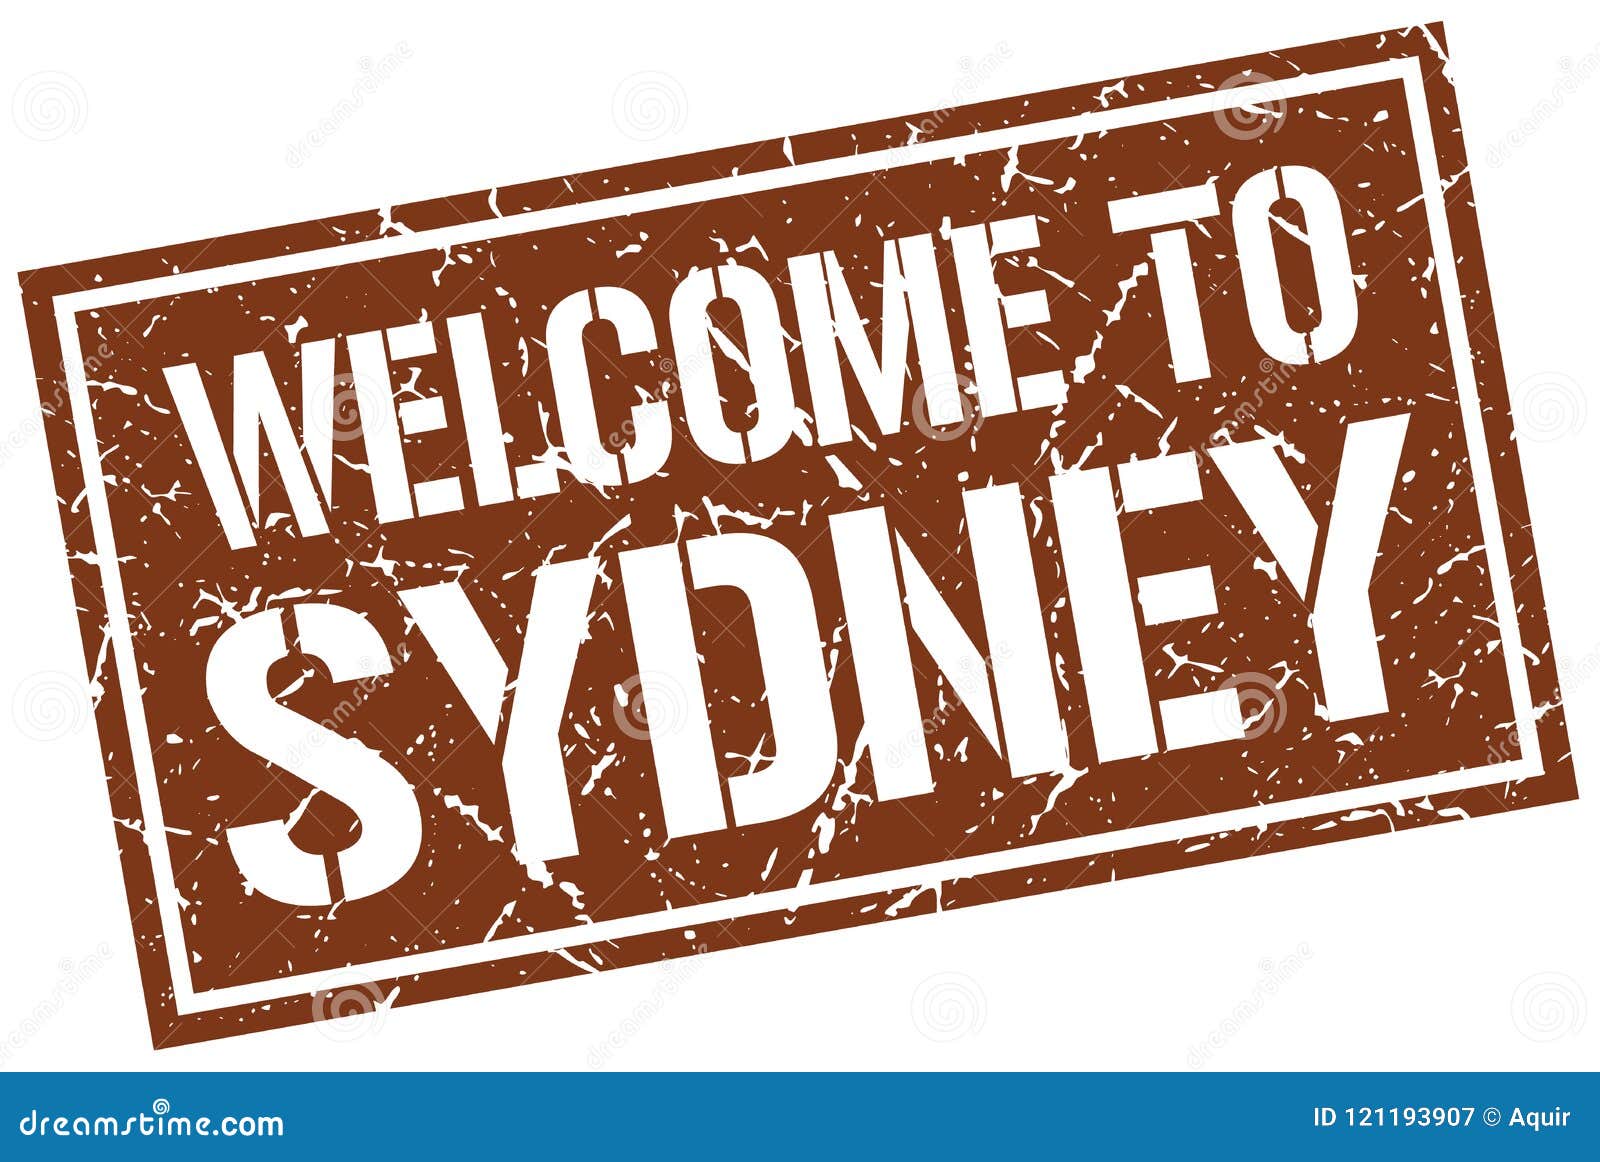 Welcome to sydney. Добро пожаловать в Сидней. Welcome to Sydney Australia.